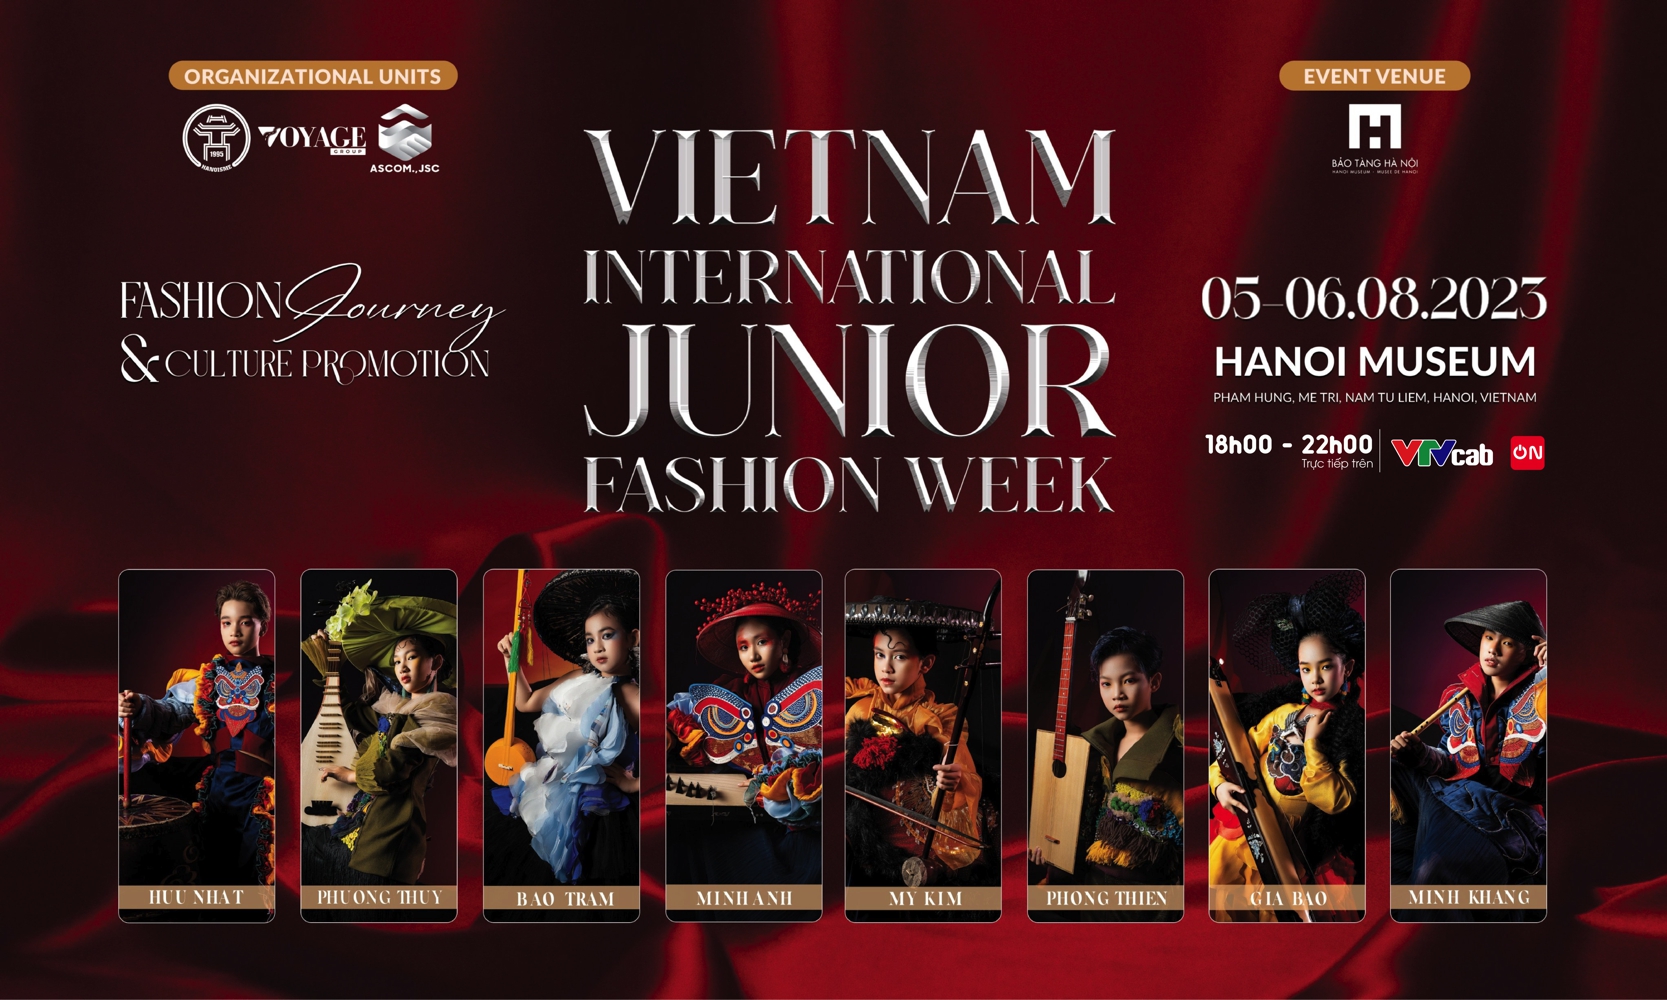 Vietnam International Junior Fashion Week sân chơi thời trang chuyên nghiệp quốc tế dành cho trẻ em